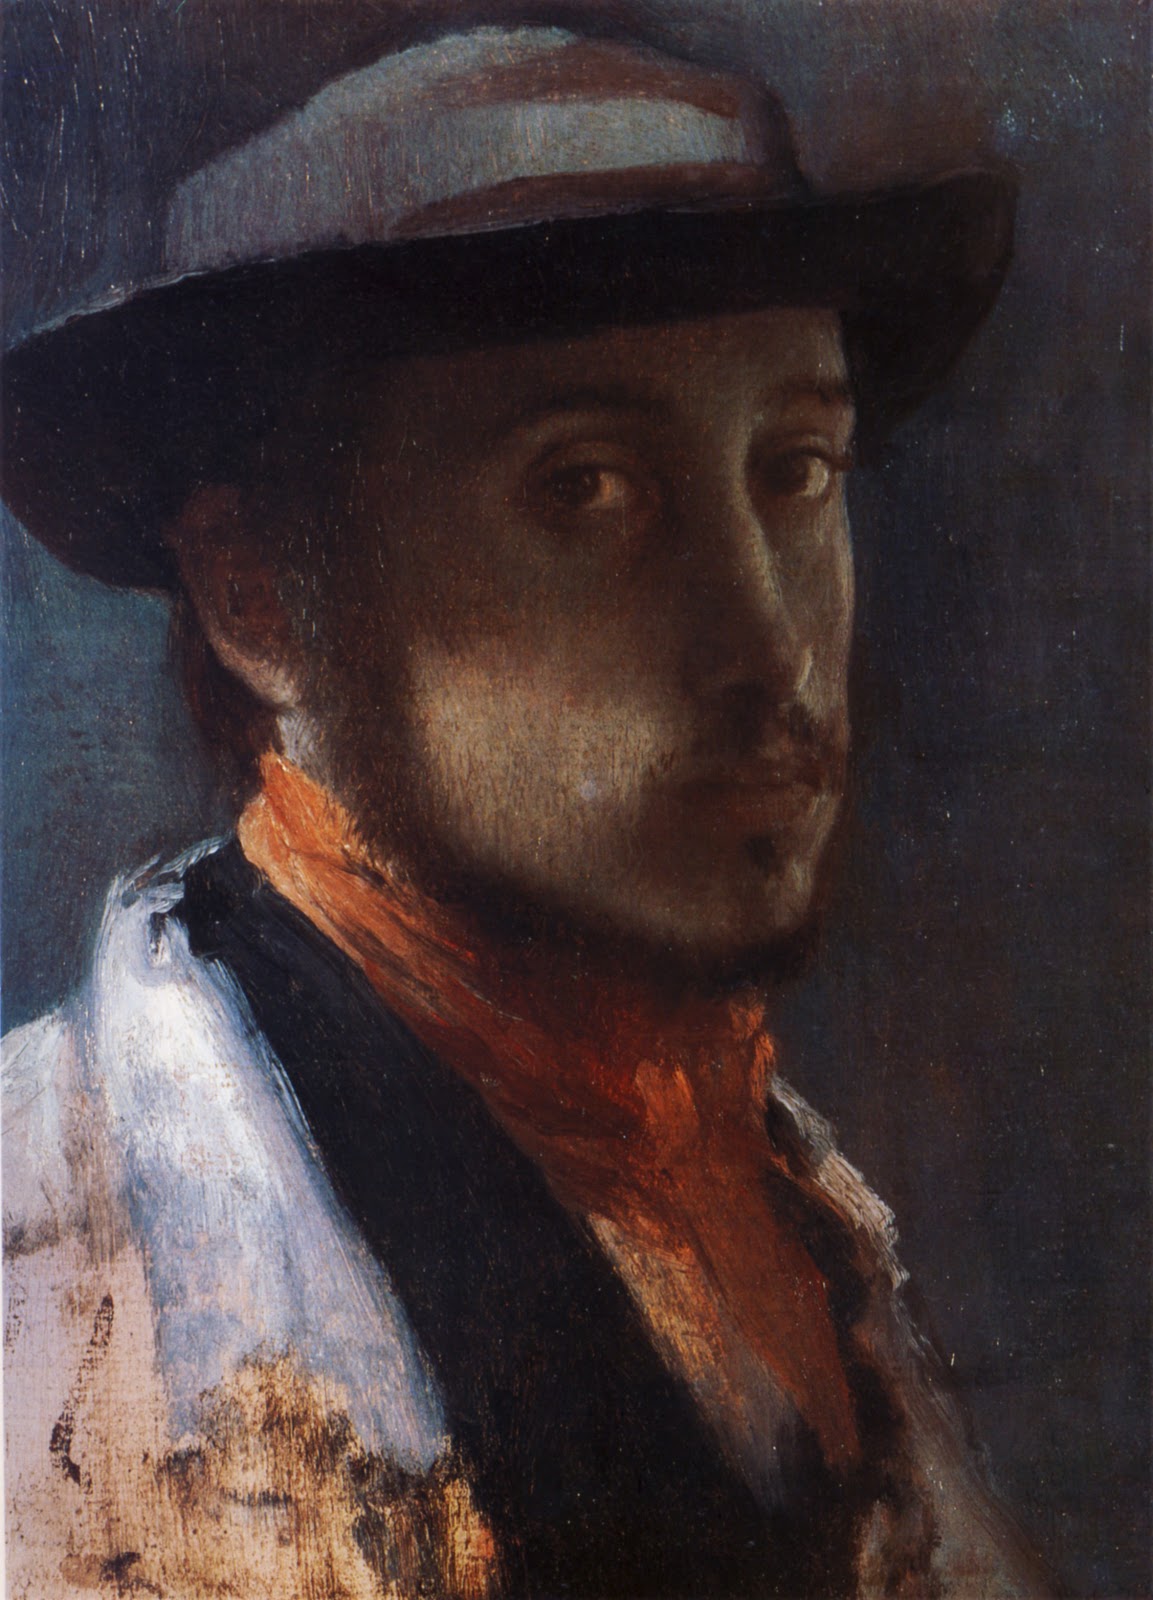 Edgar+Degas-1834-1917 (182).jpg